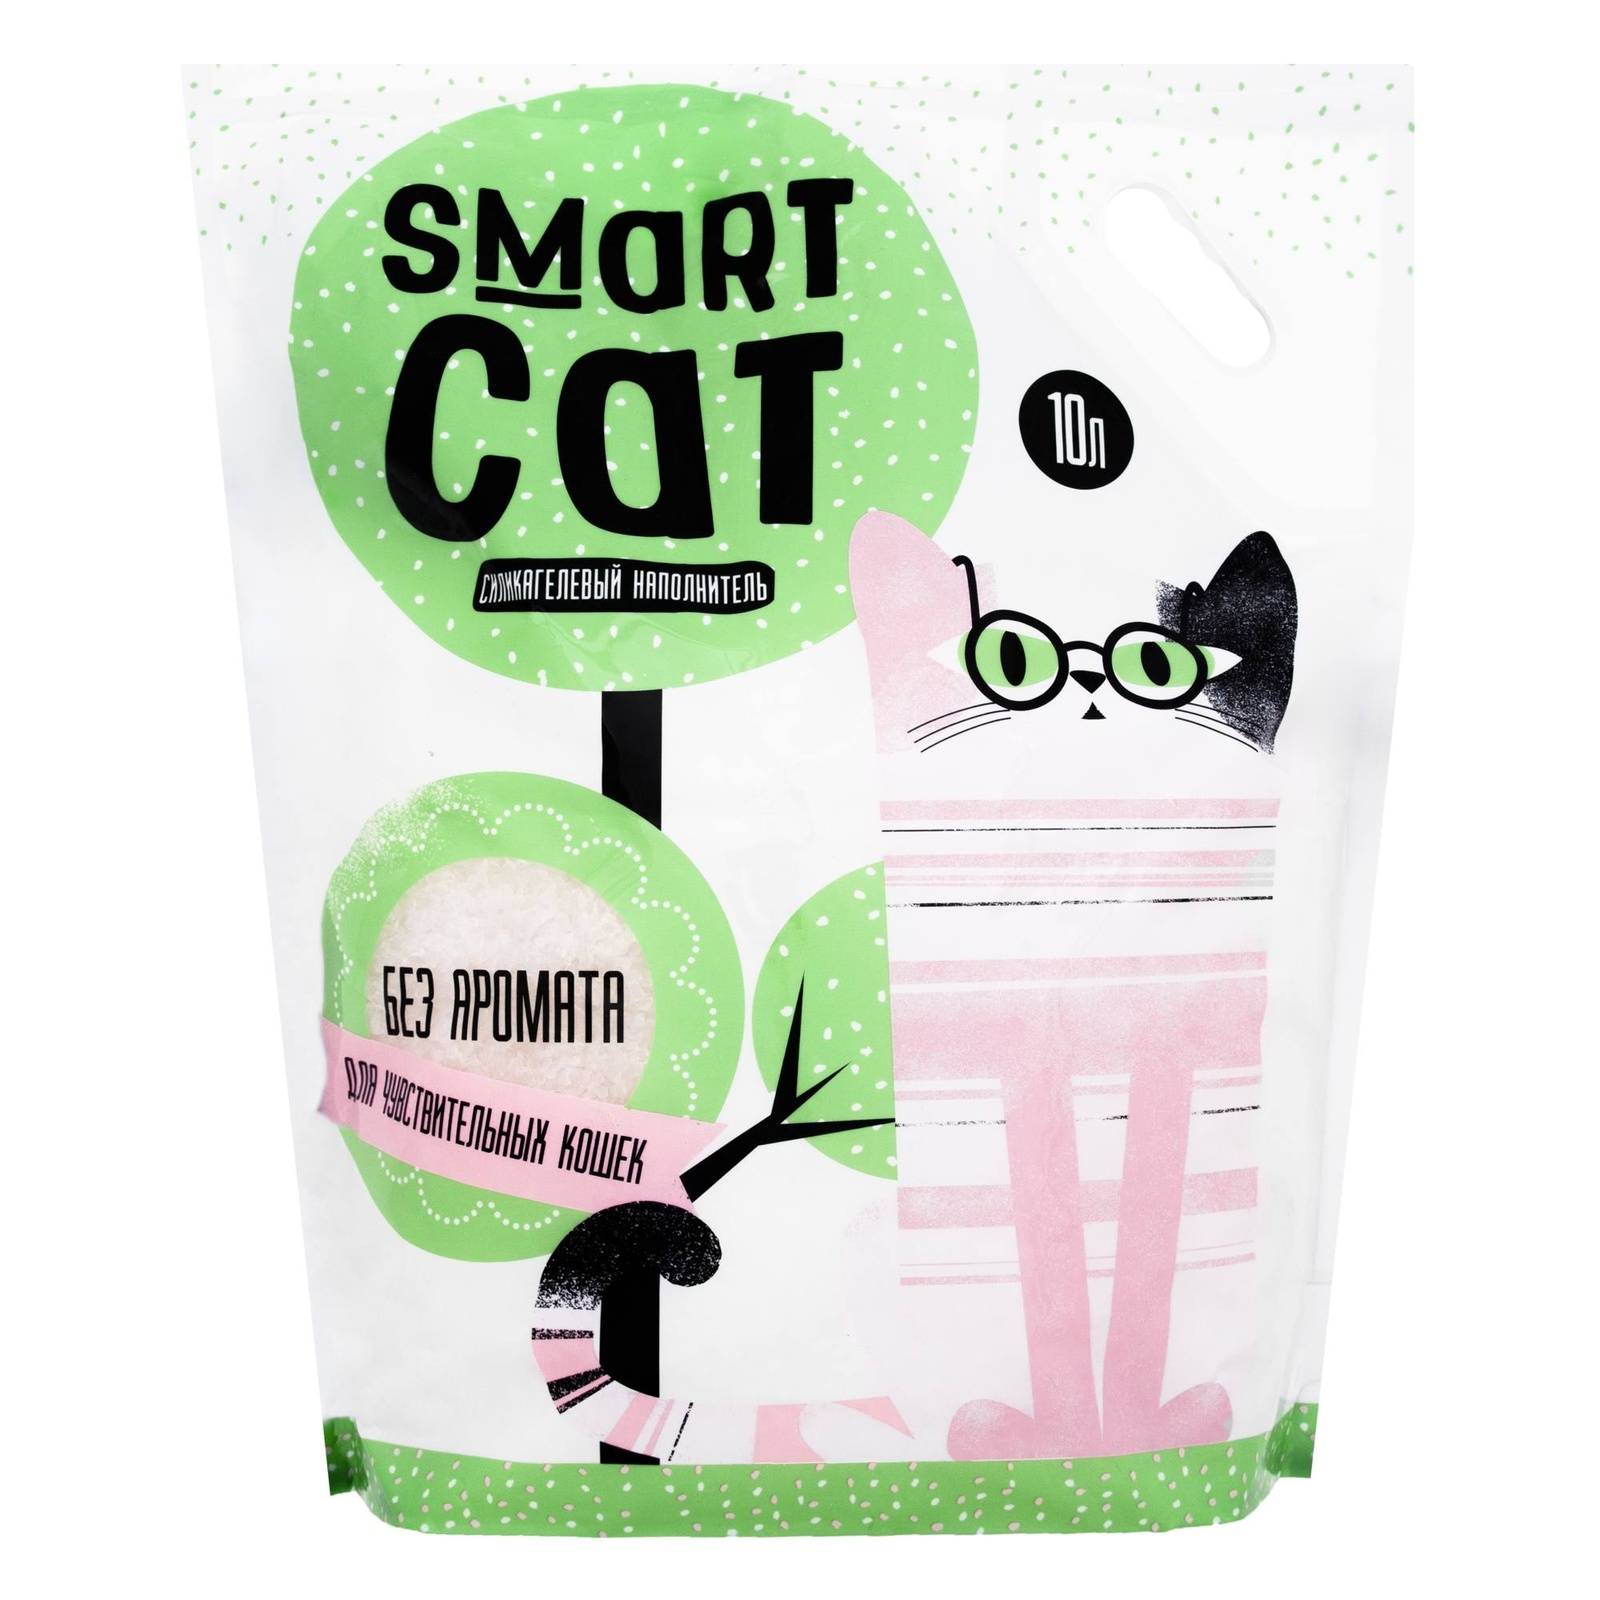 Силикагелевый наполнитель для чувствительных кошек, без аромата (15,29 кг) Smart Cat наполнитель Силикагелевый наполнитель для чувствительных кошек, без аромата (15,29 кг) - фото 3